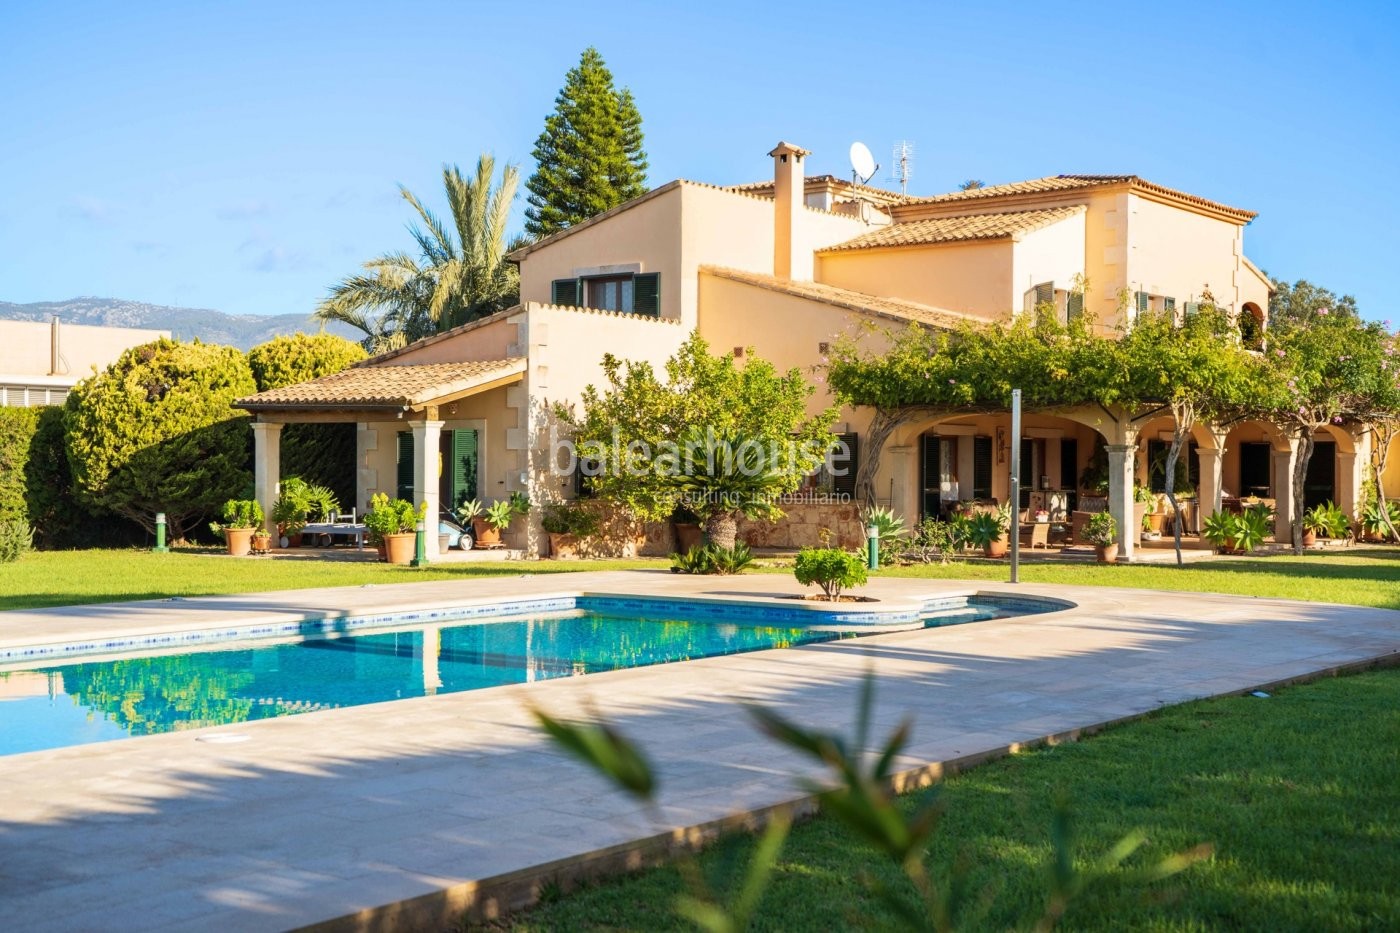 Disfruta de la calidez y de la luz de Mallorca en esta amplia casa con gran piscina y jardín privado